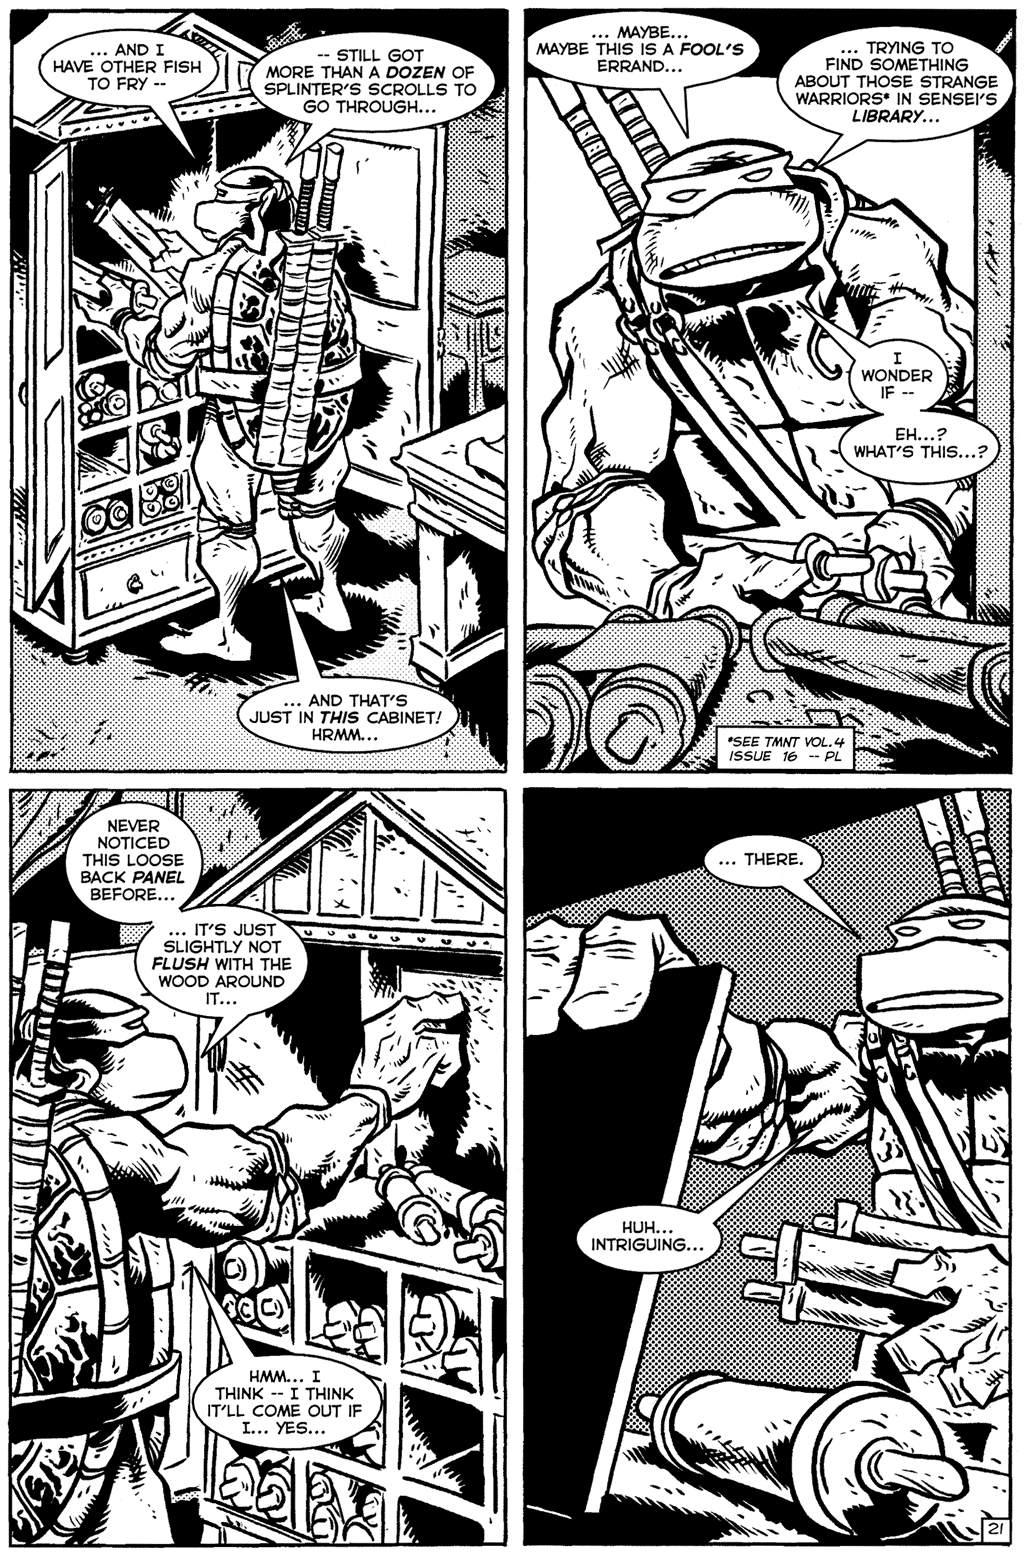 TMNT: Teenage Mutant Ninja Turtles issue 24 - Page 23